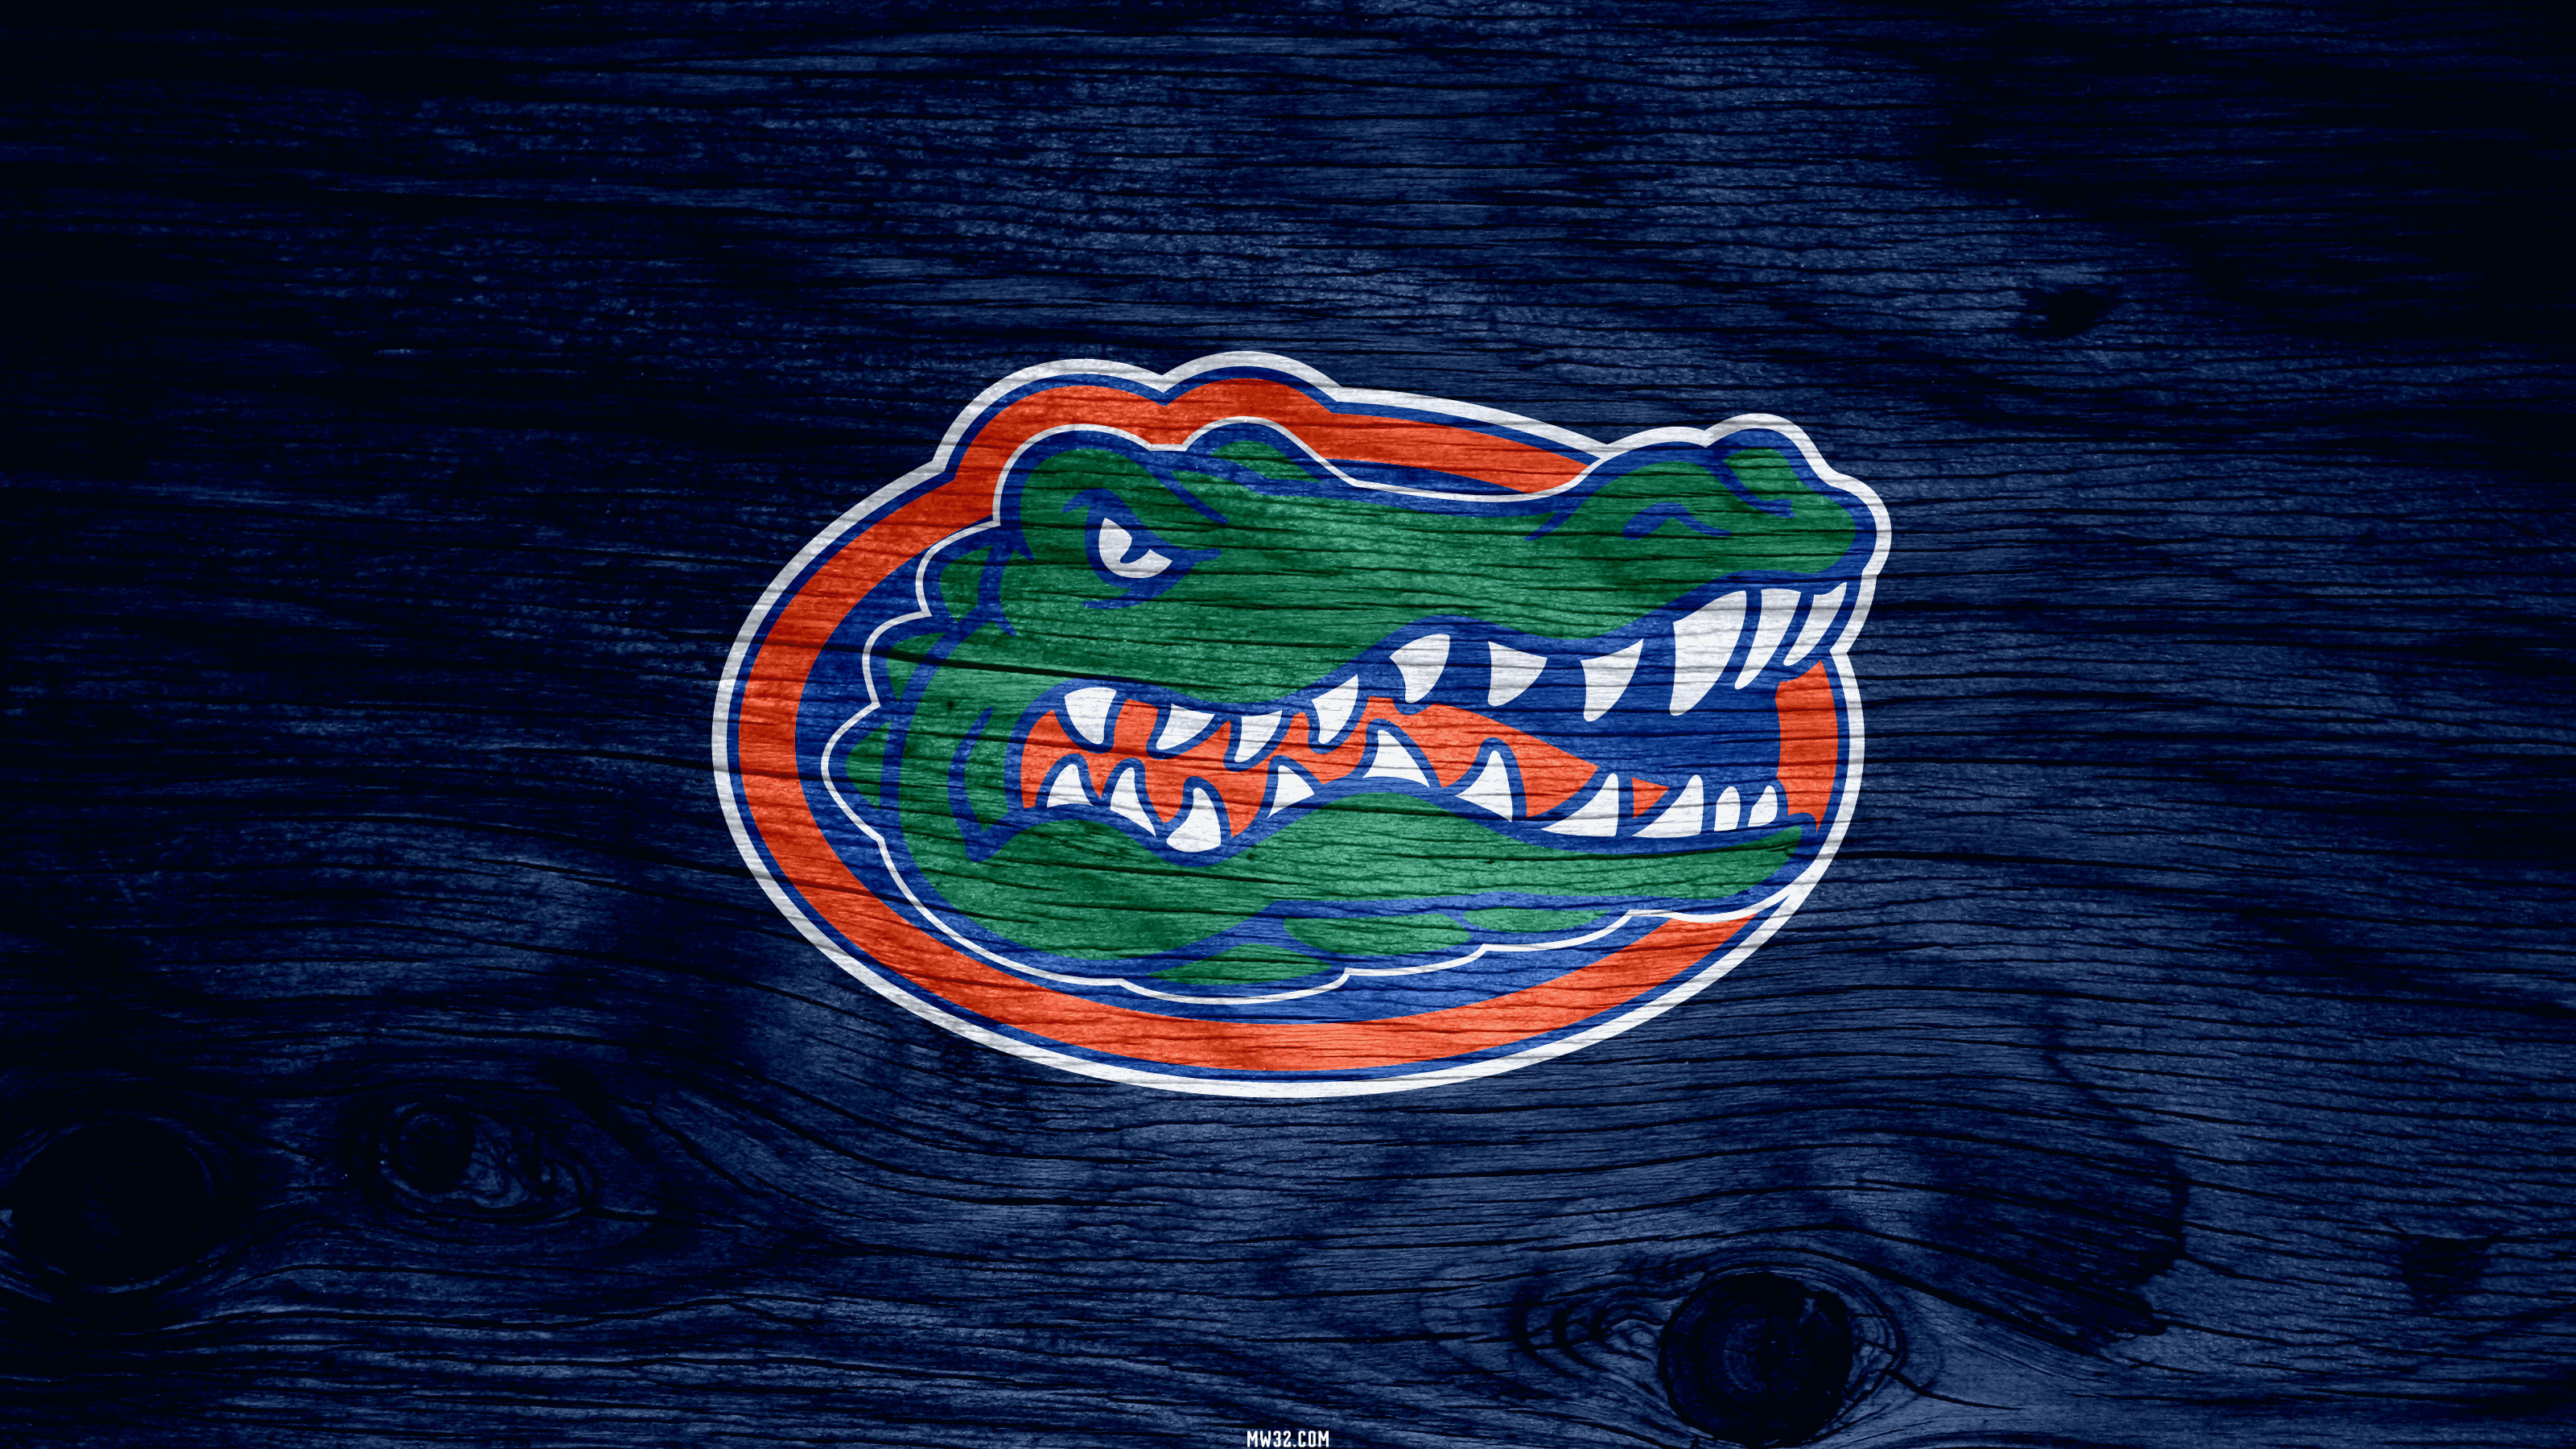 [49+] Florida Gators Wallpaper Desktop on WallpaperSafari